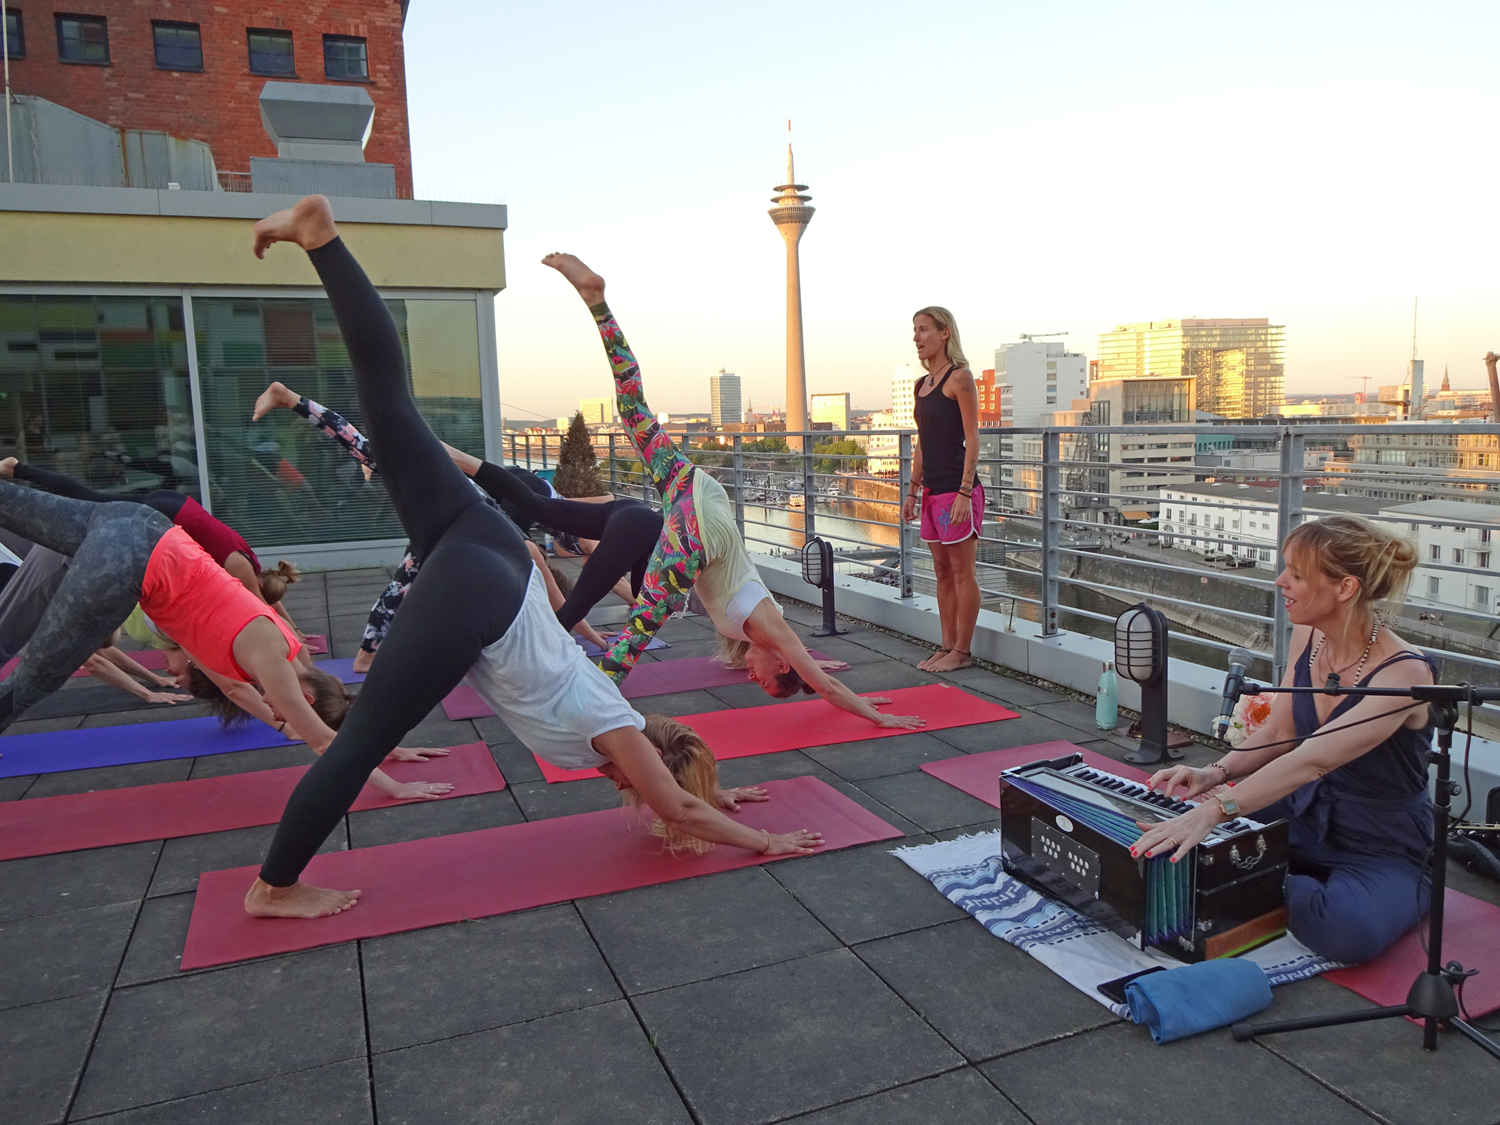 Courtyard by Marriott Düsseldorf Hafen: Mit Rooftop Yoga entspannt der Sonne entgegen